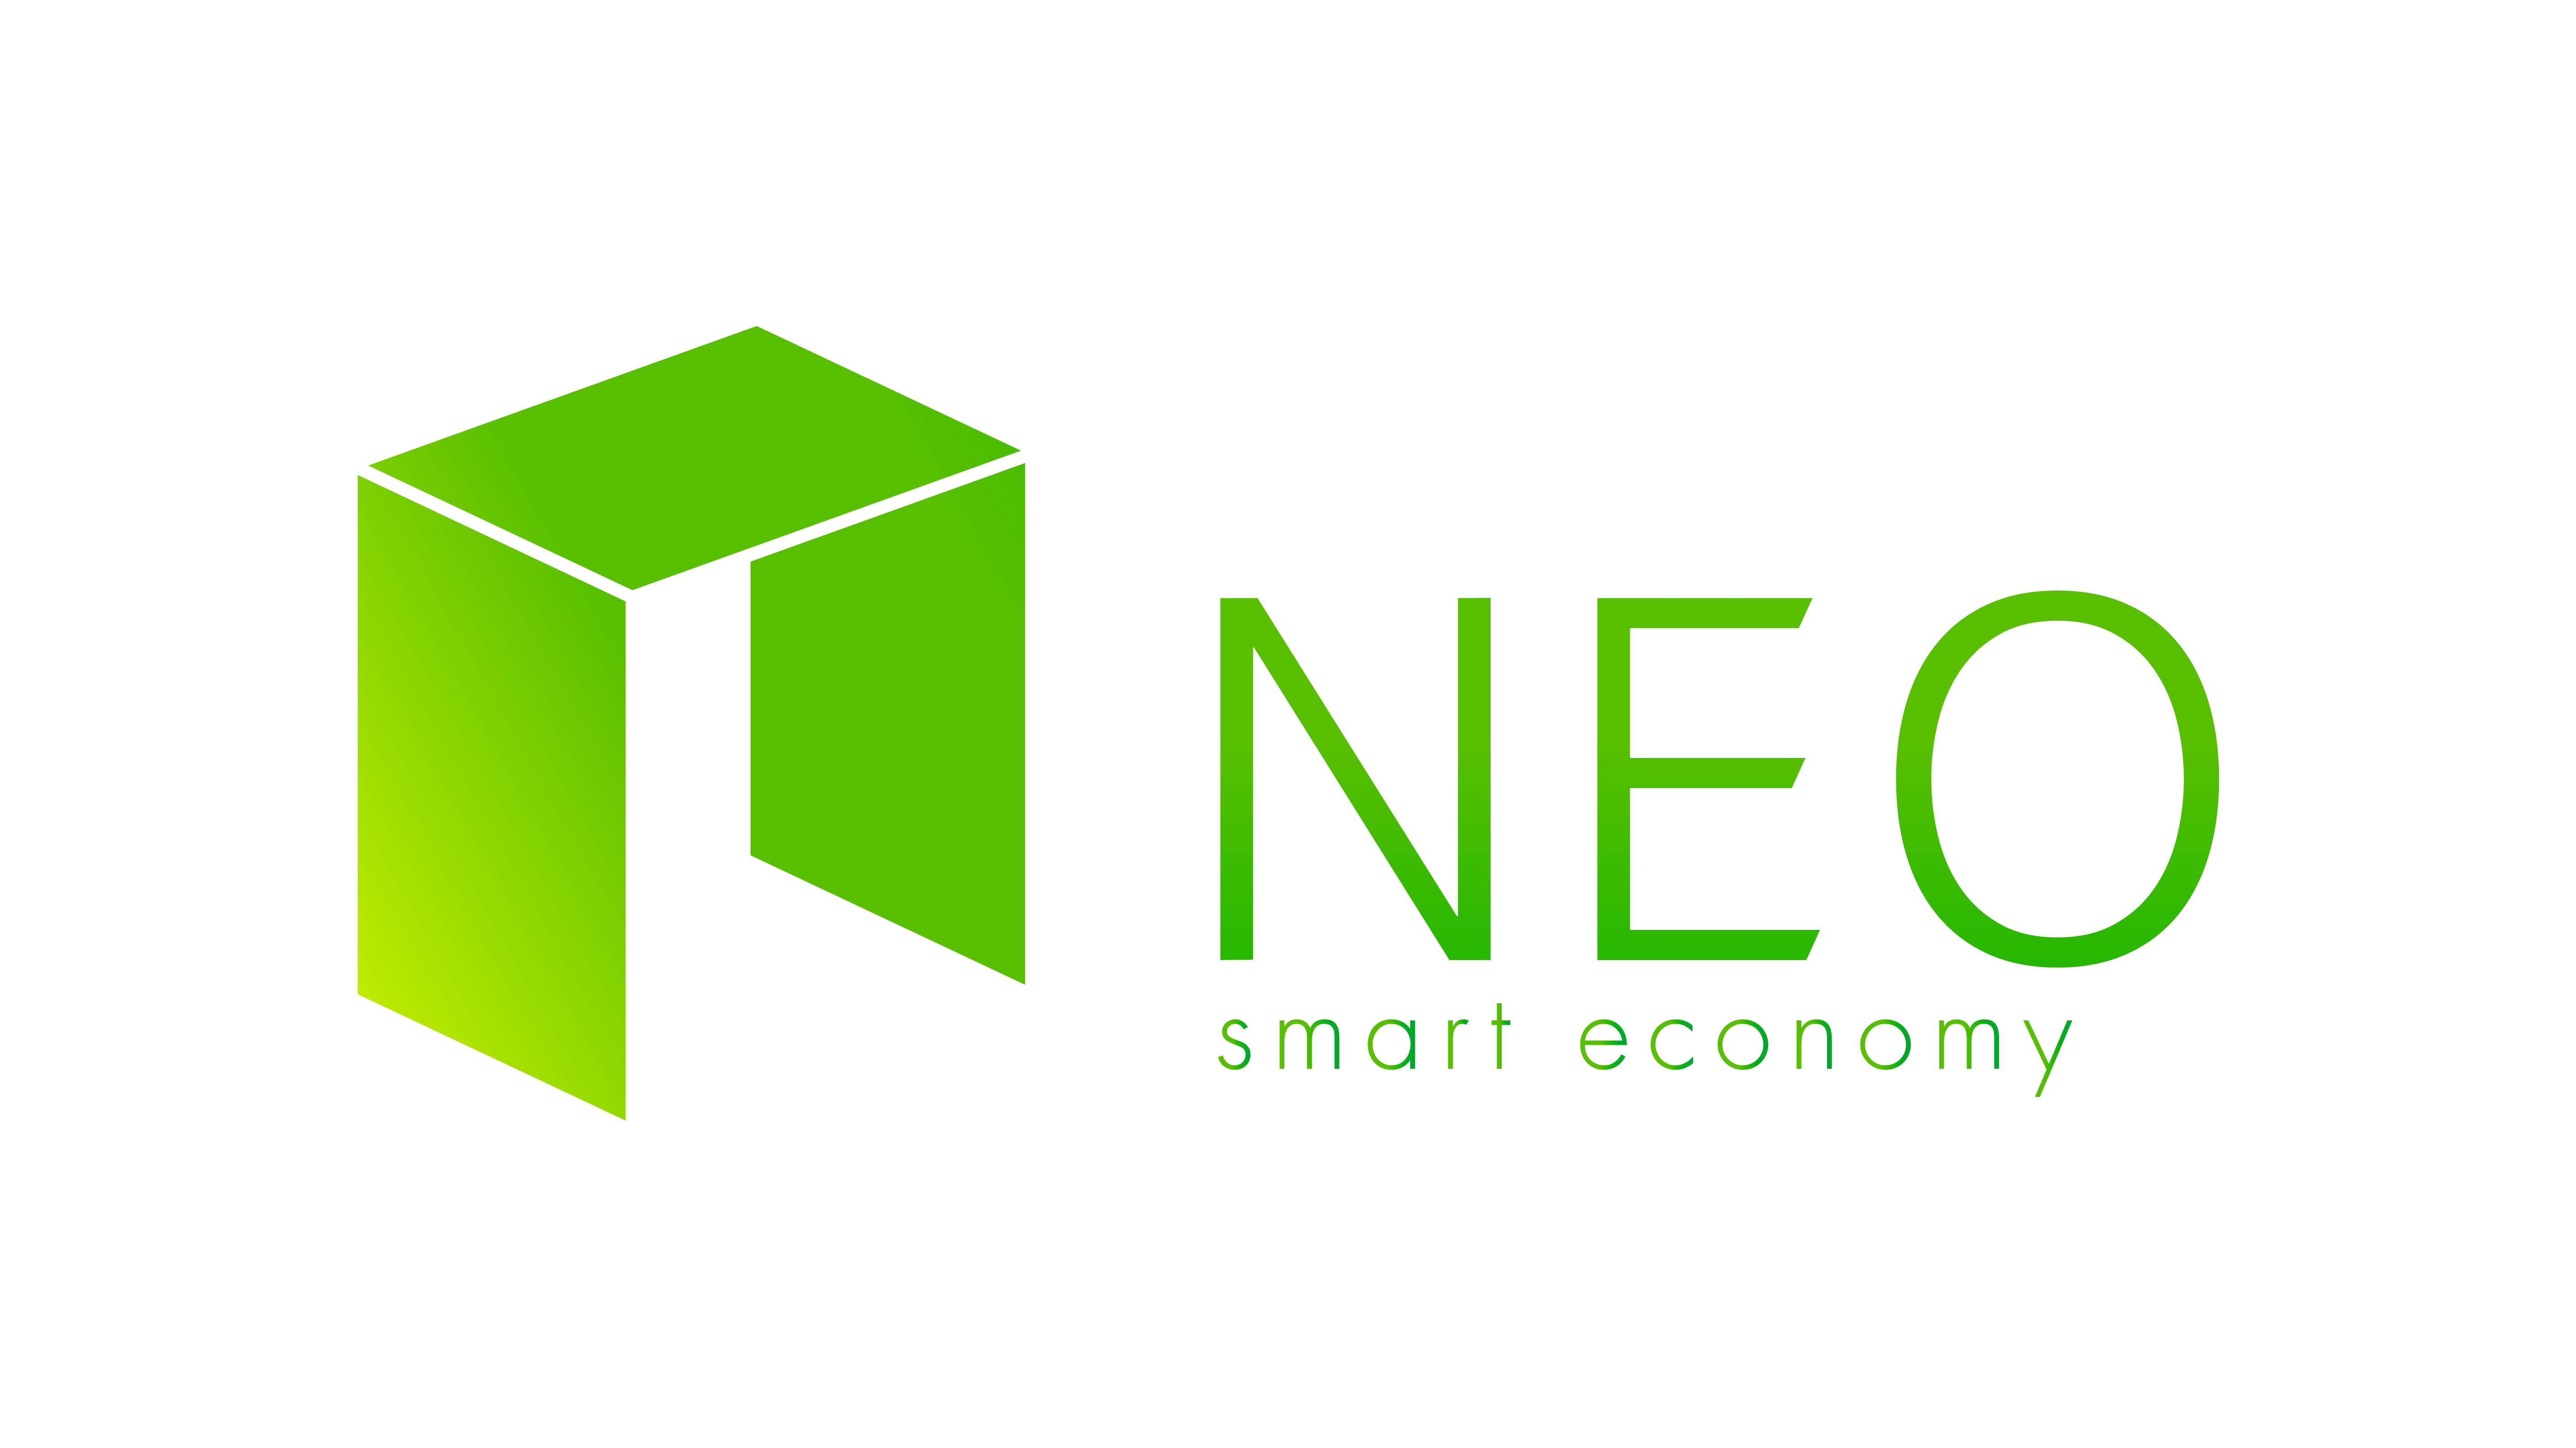 NEO-smarg-economy-logo.jpg